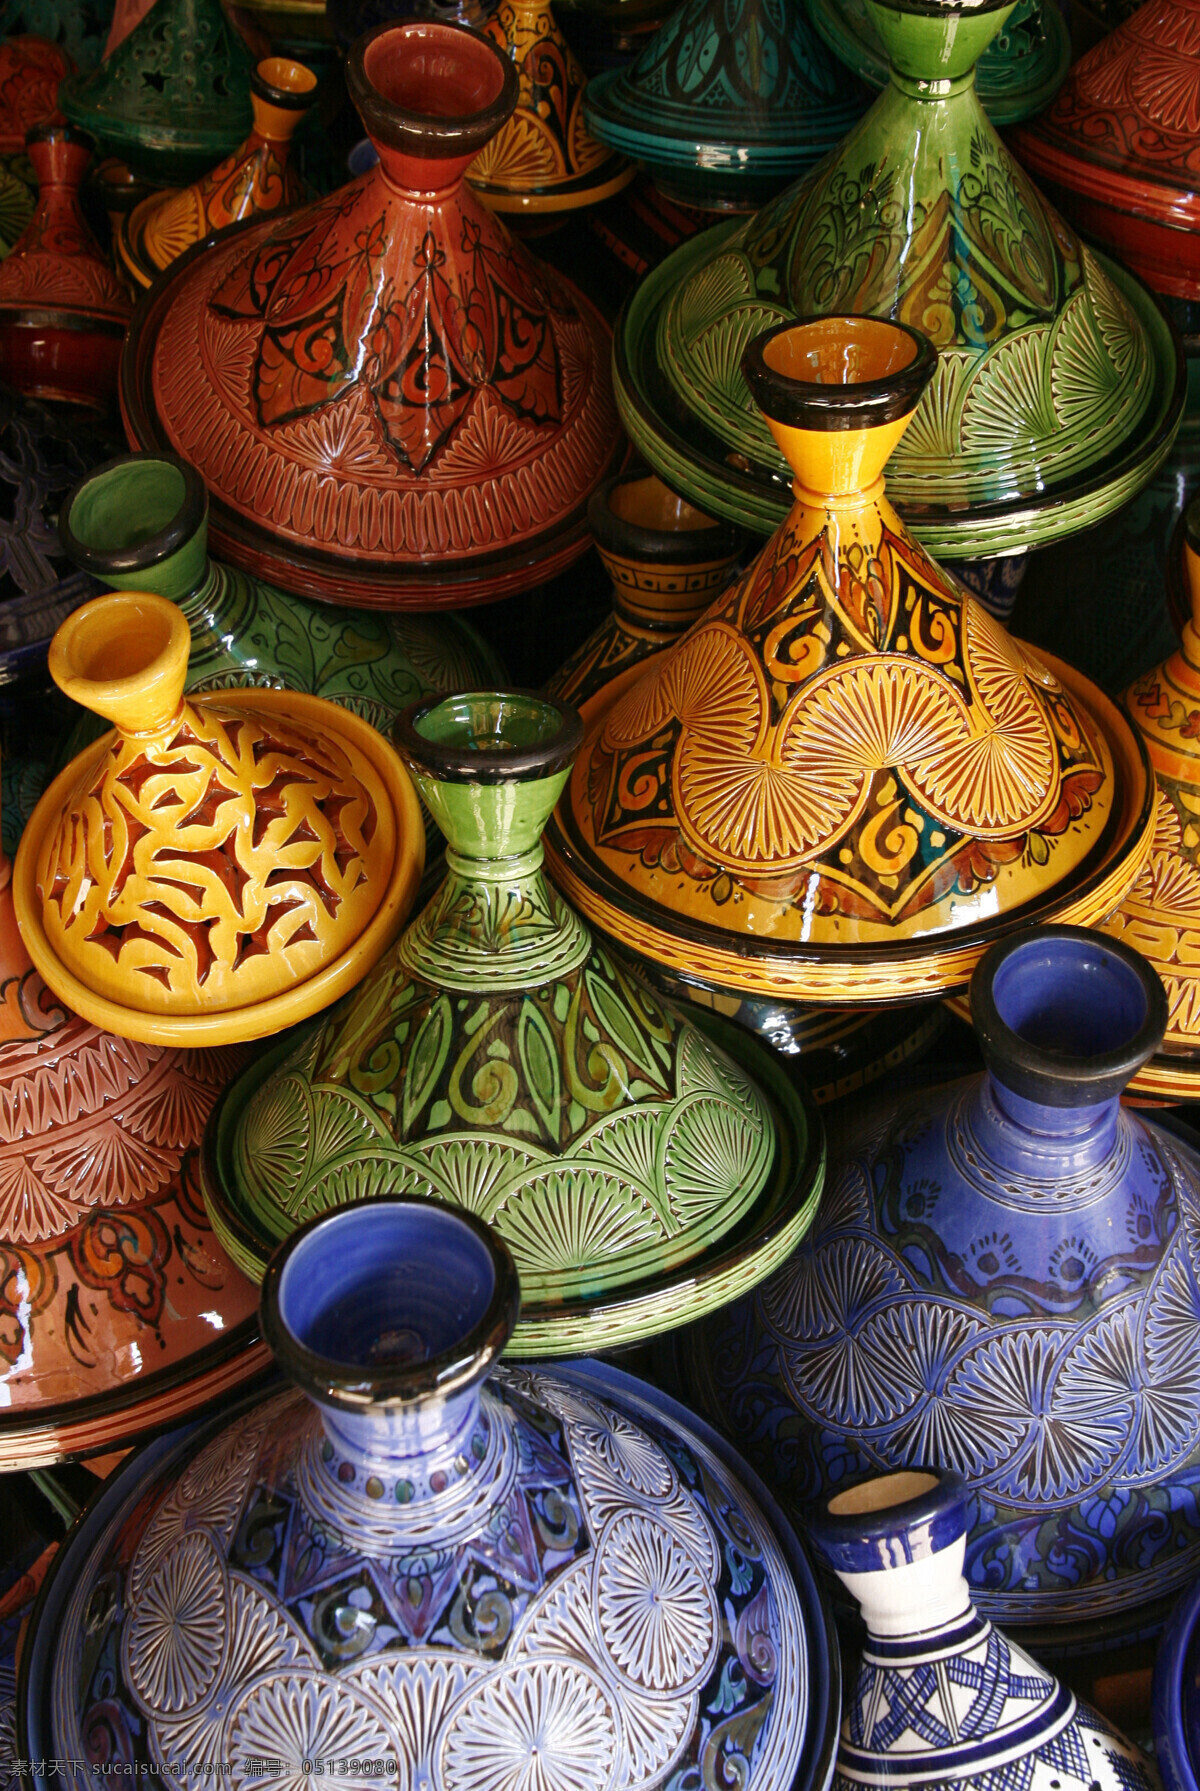 陶瓷工艺 彩陶 陶瓷 陶罐 瓷器 陶瓷工艺品 传统工艺 文化艺术